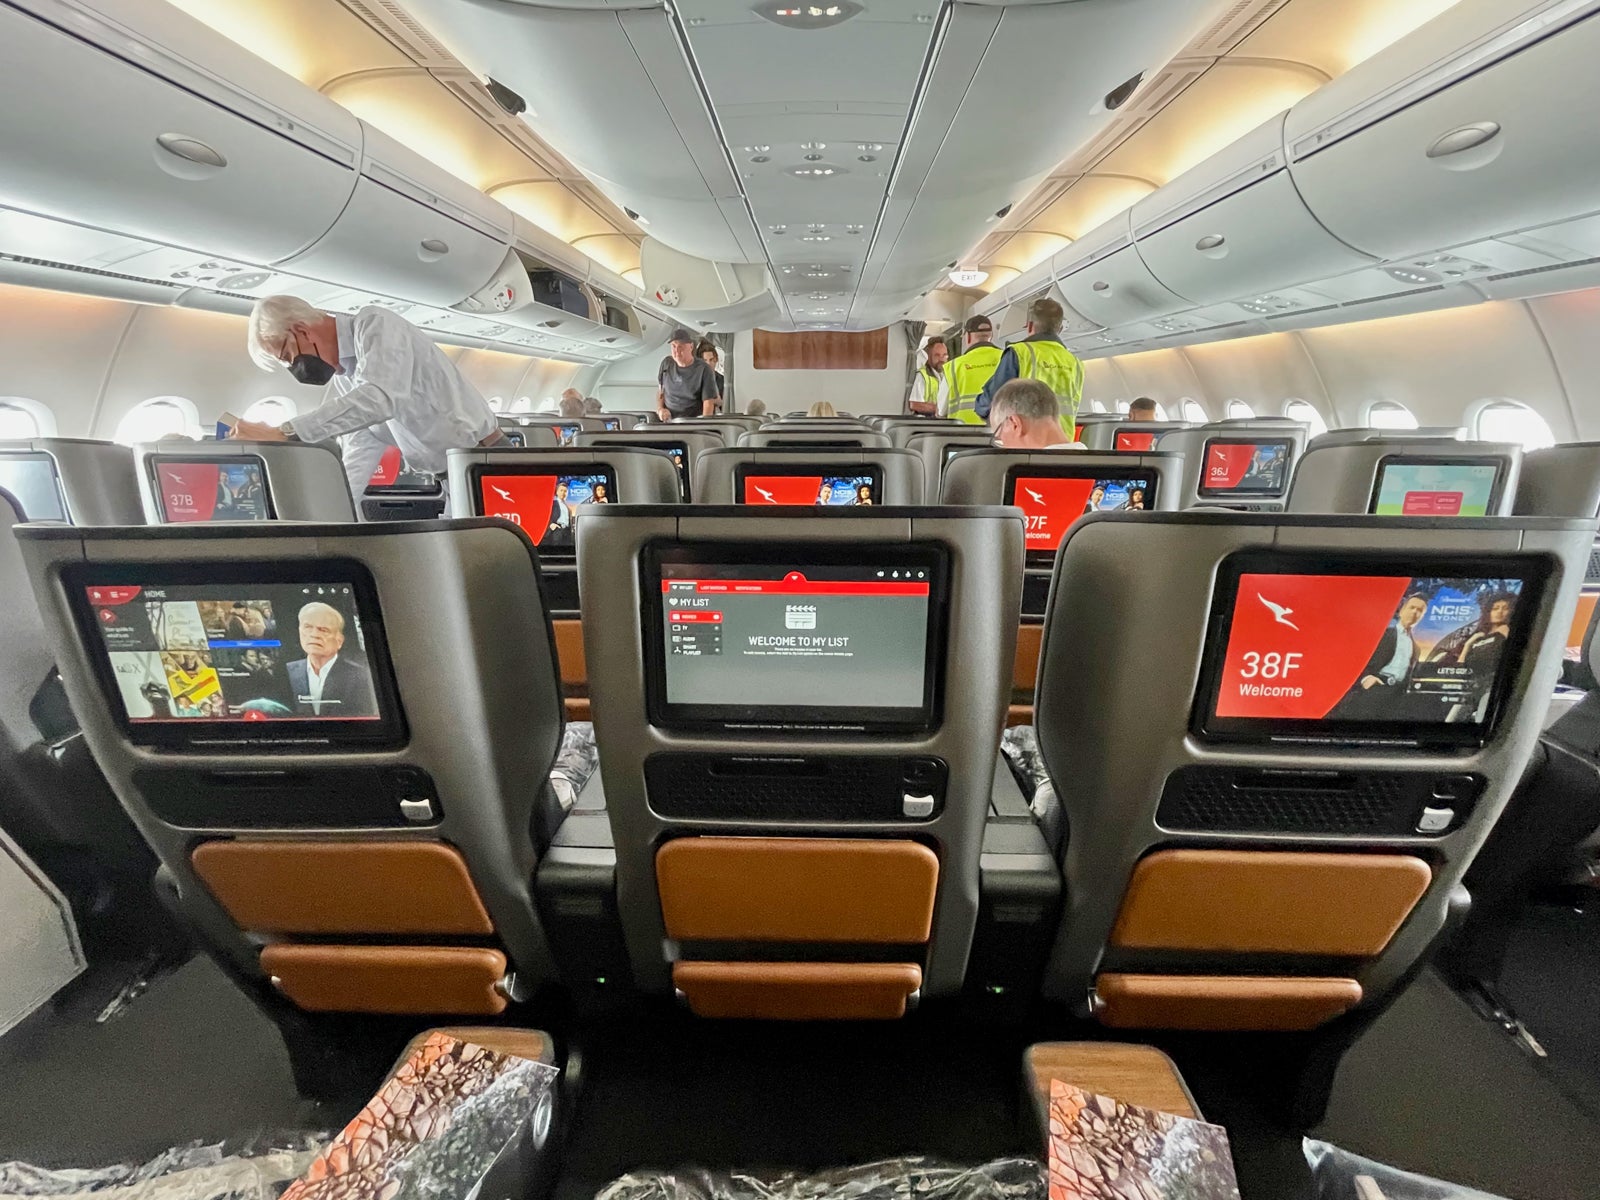 qantas travel class h